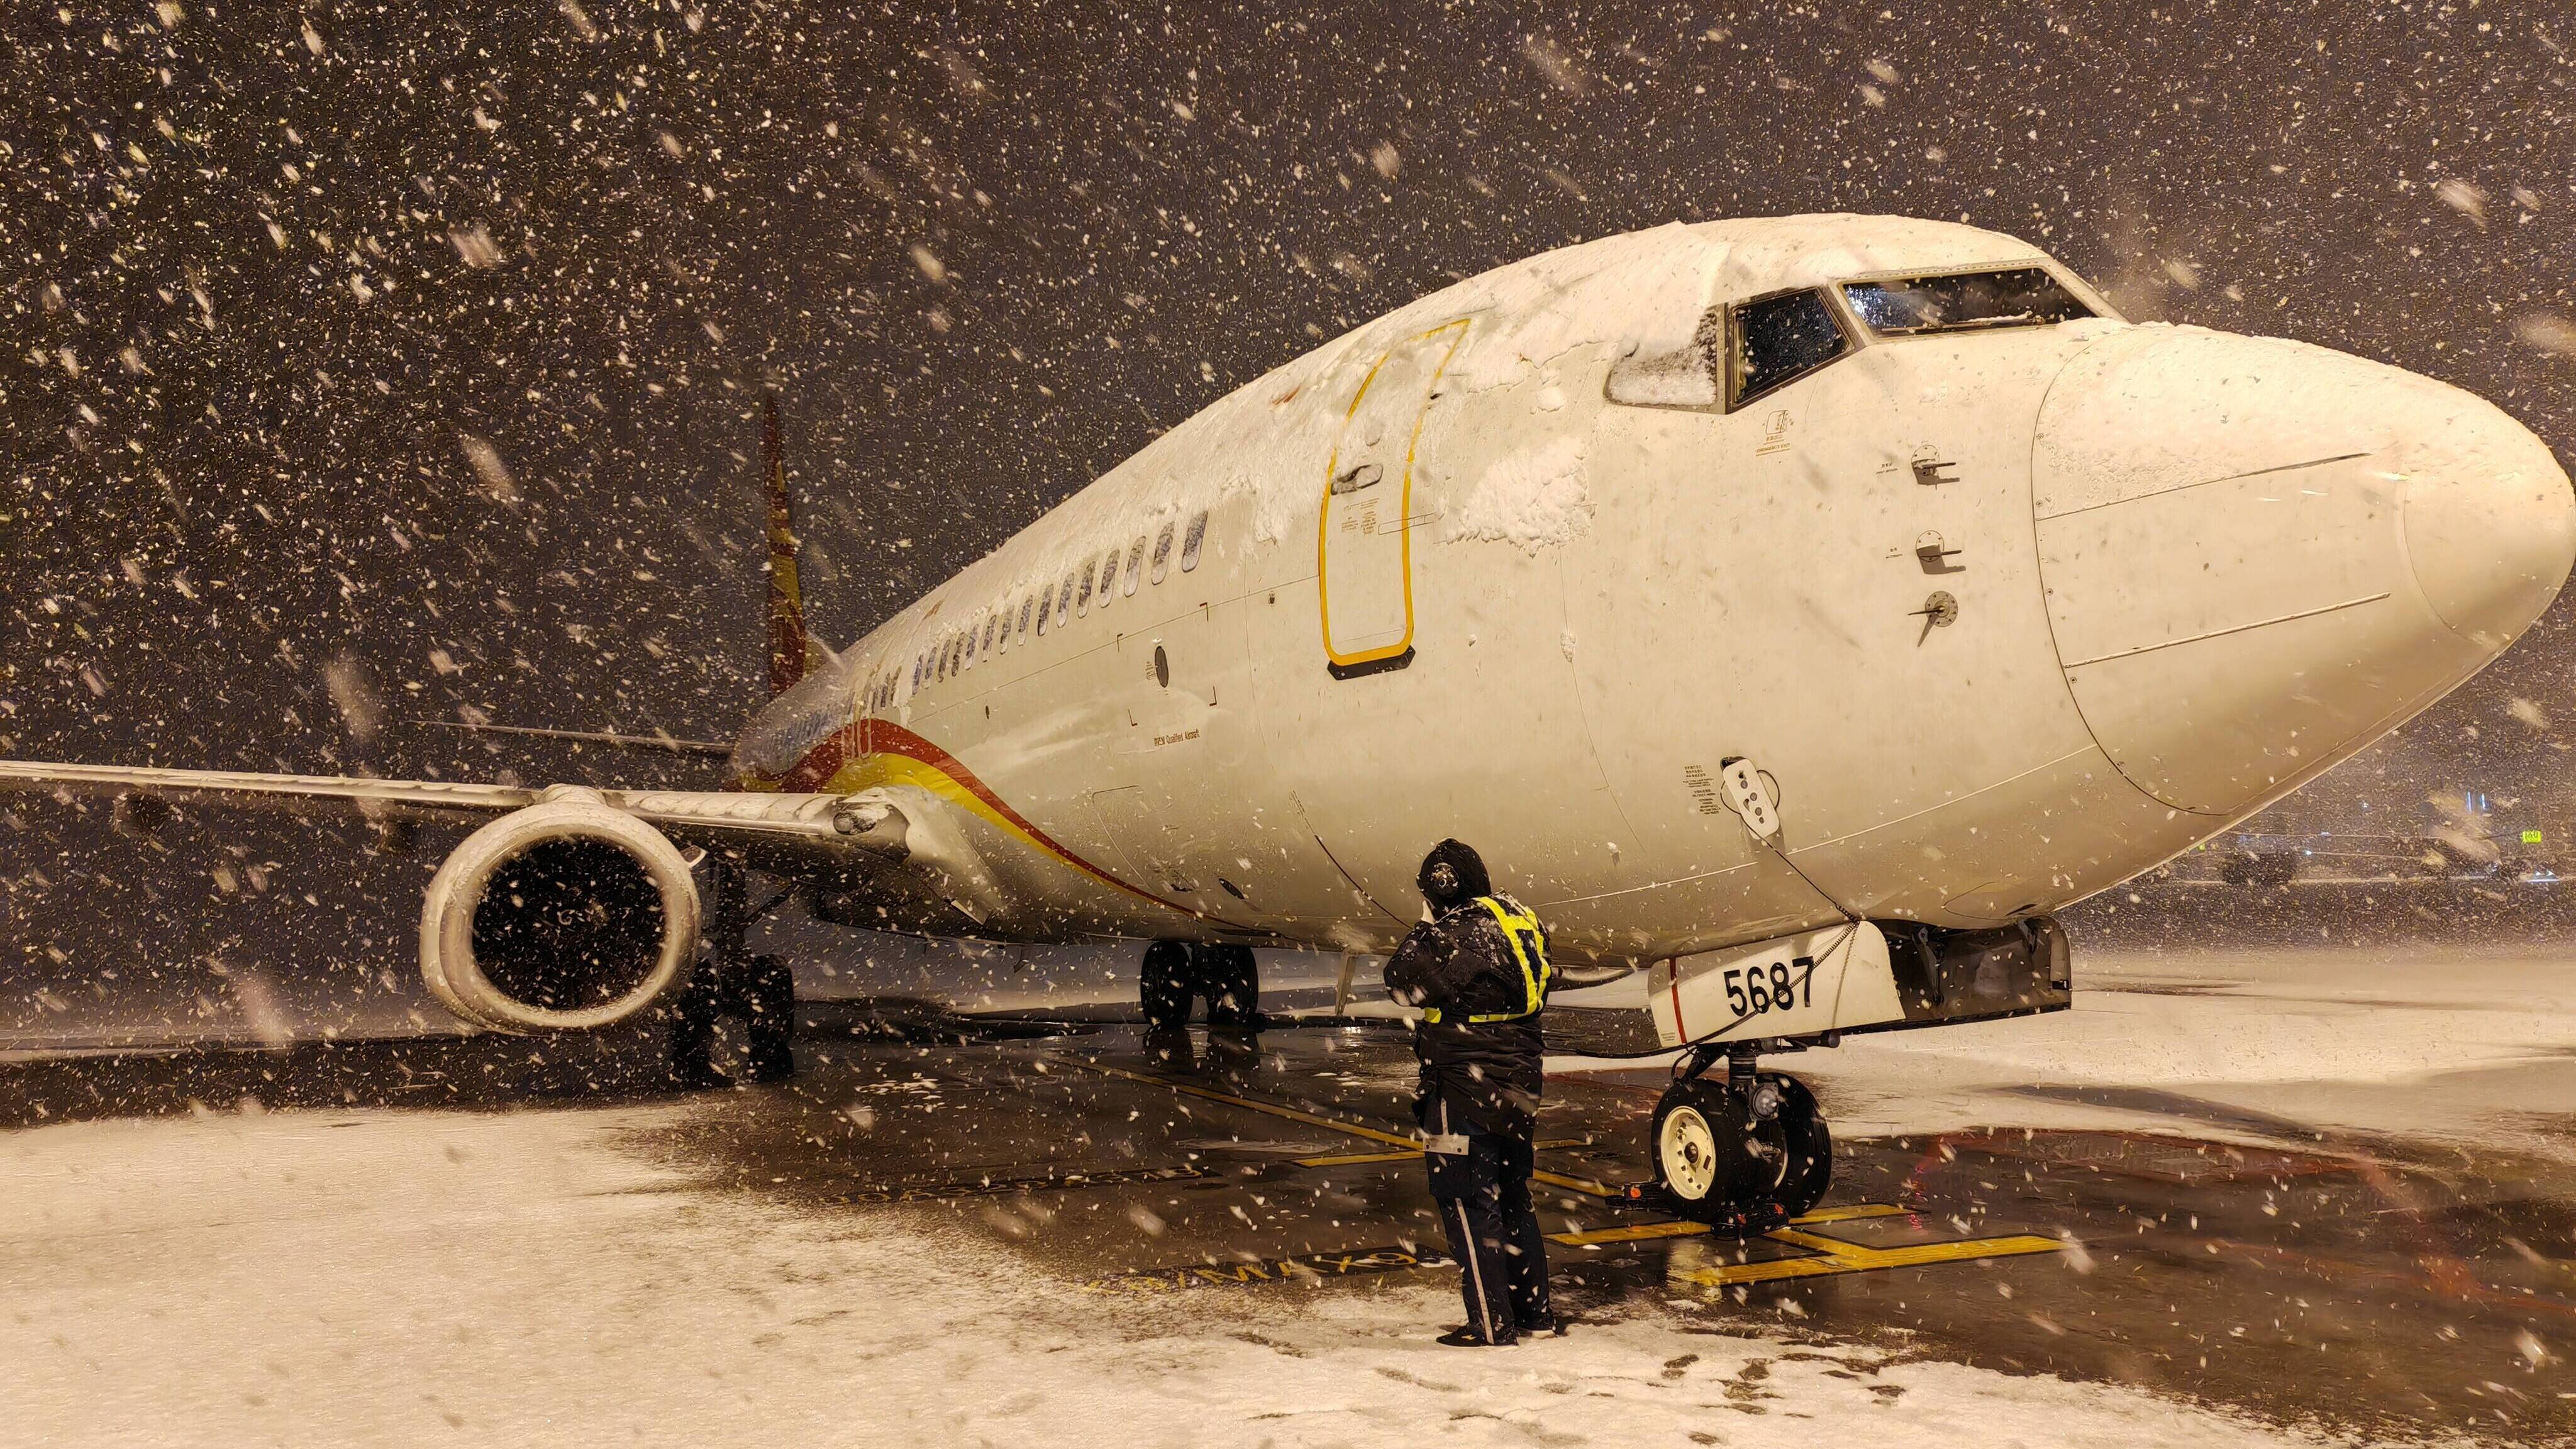 强降雪来袭 青岛机场全力做好航班和旅客服务保障 无因本场降雪原因取消航班